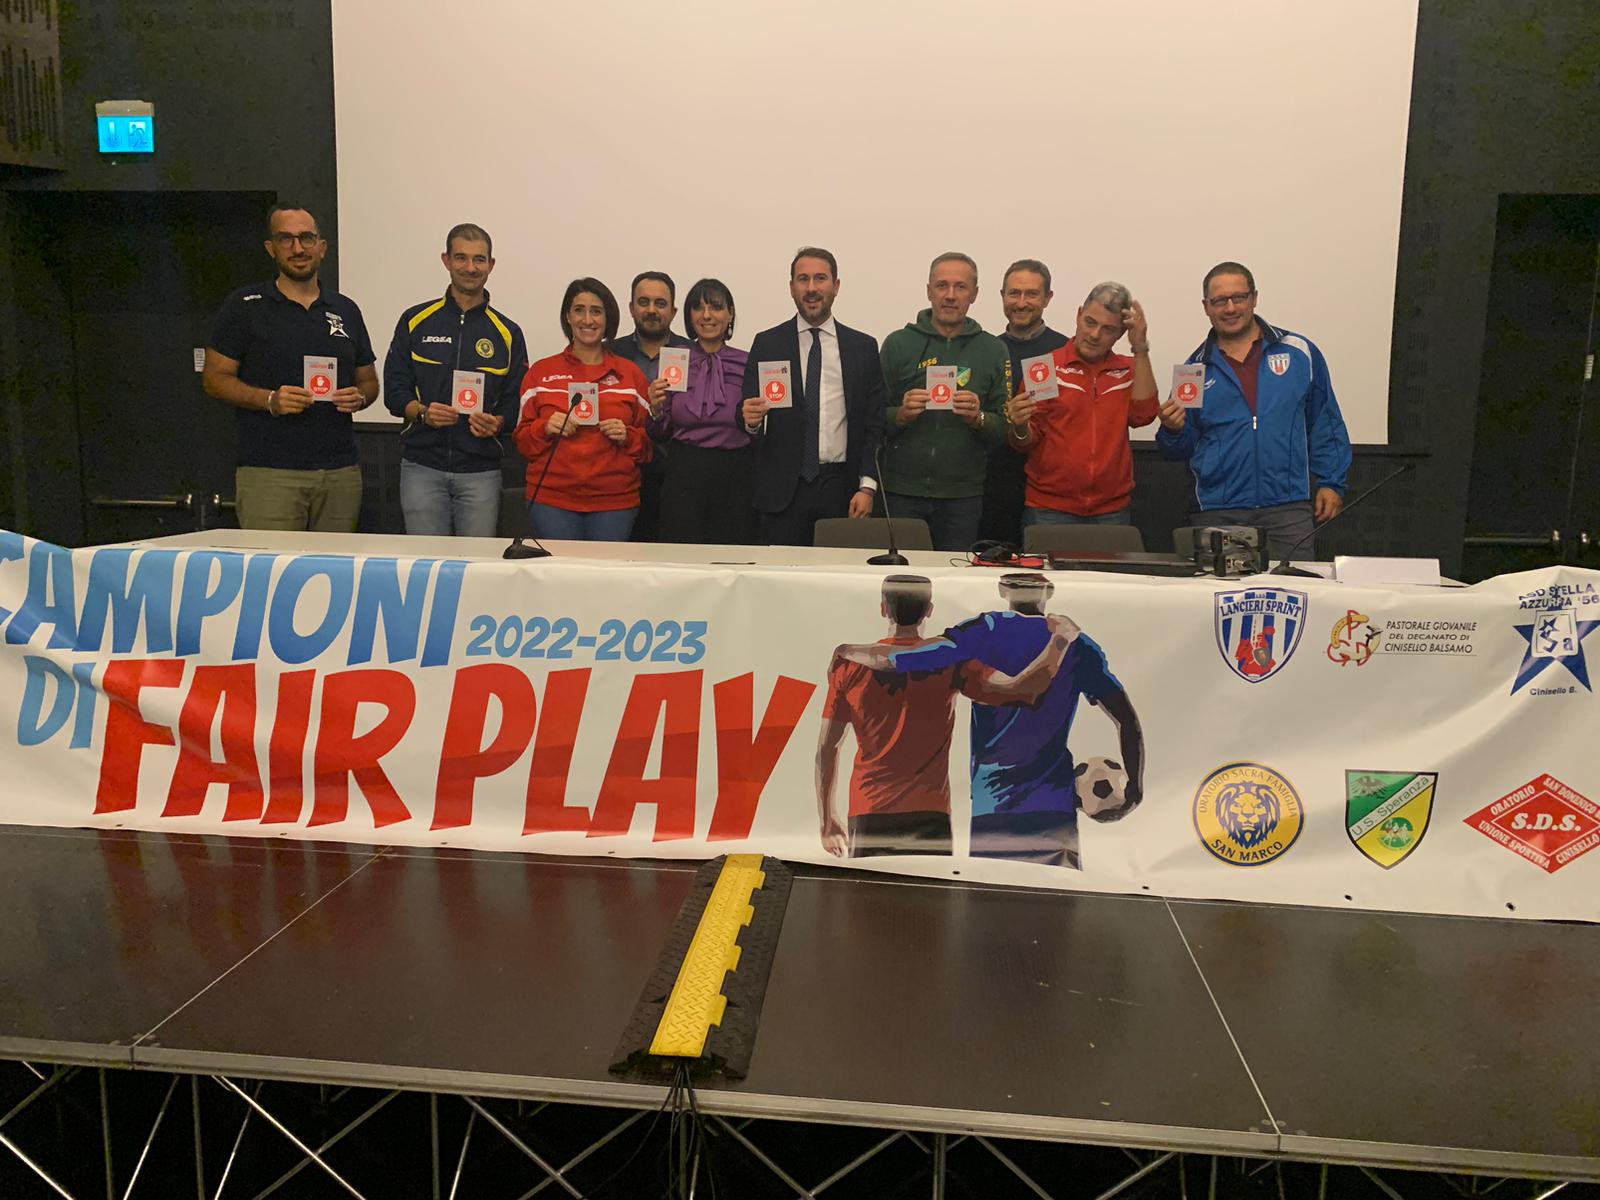 “Fair play”: un progetto a Cinisello Balsamo